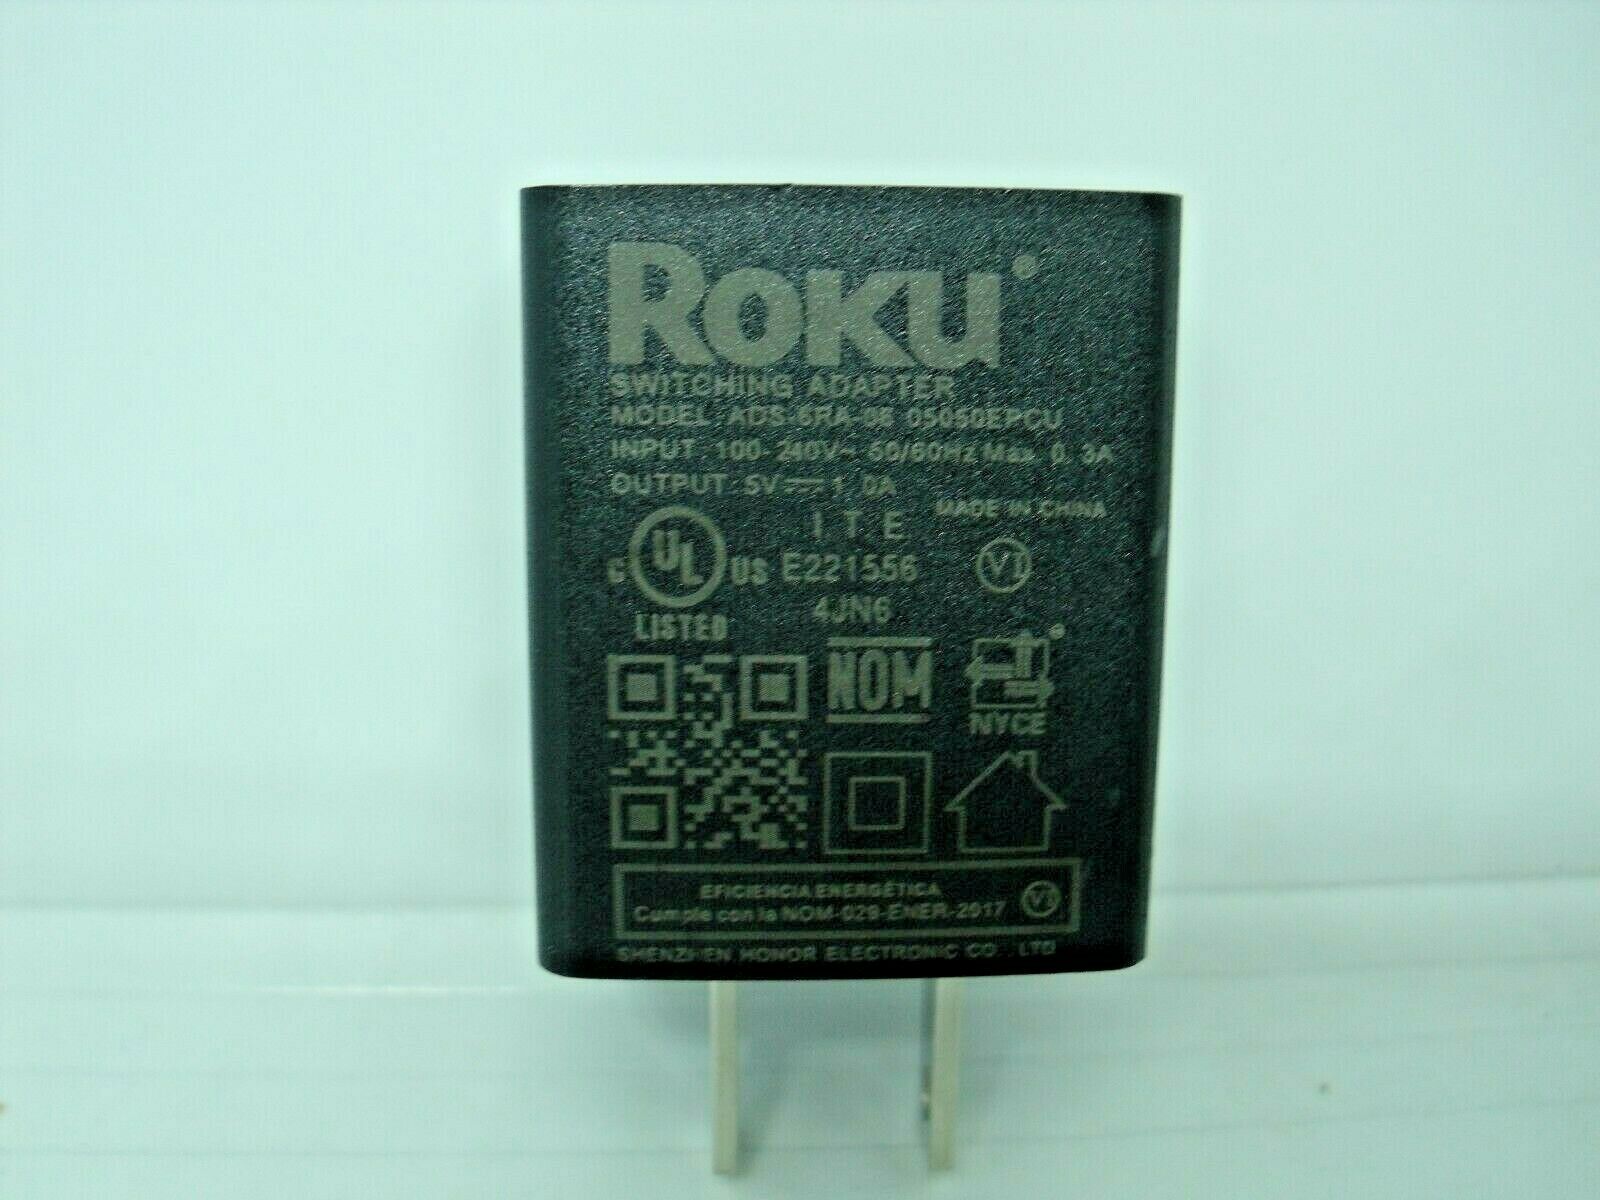 AC DC Power Adapter Roku 5.0V 1.0A (no Cable) ADS-6RA-06 Lot of 2 USA SELLER input：100-240v 50-60hz, 0.25a output: 5 - Click Image to Close